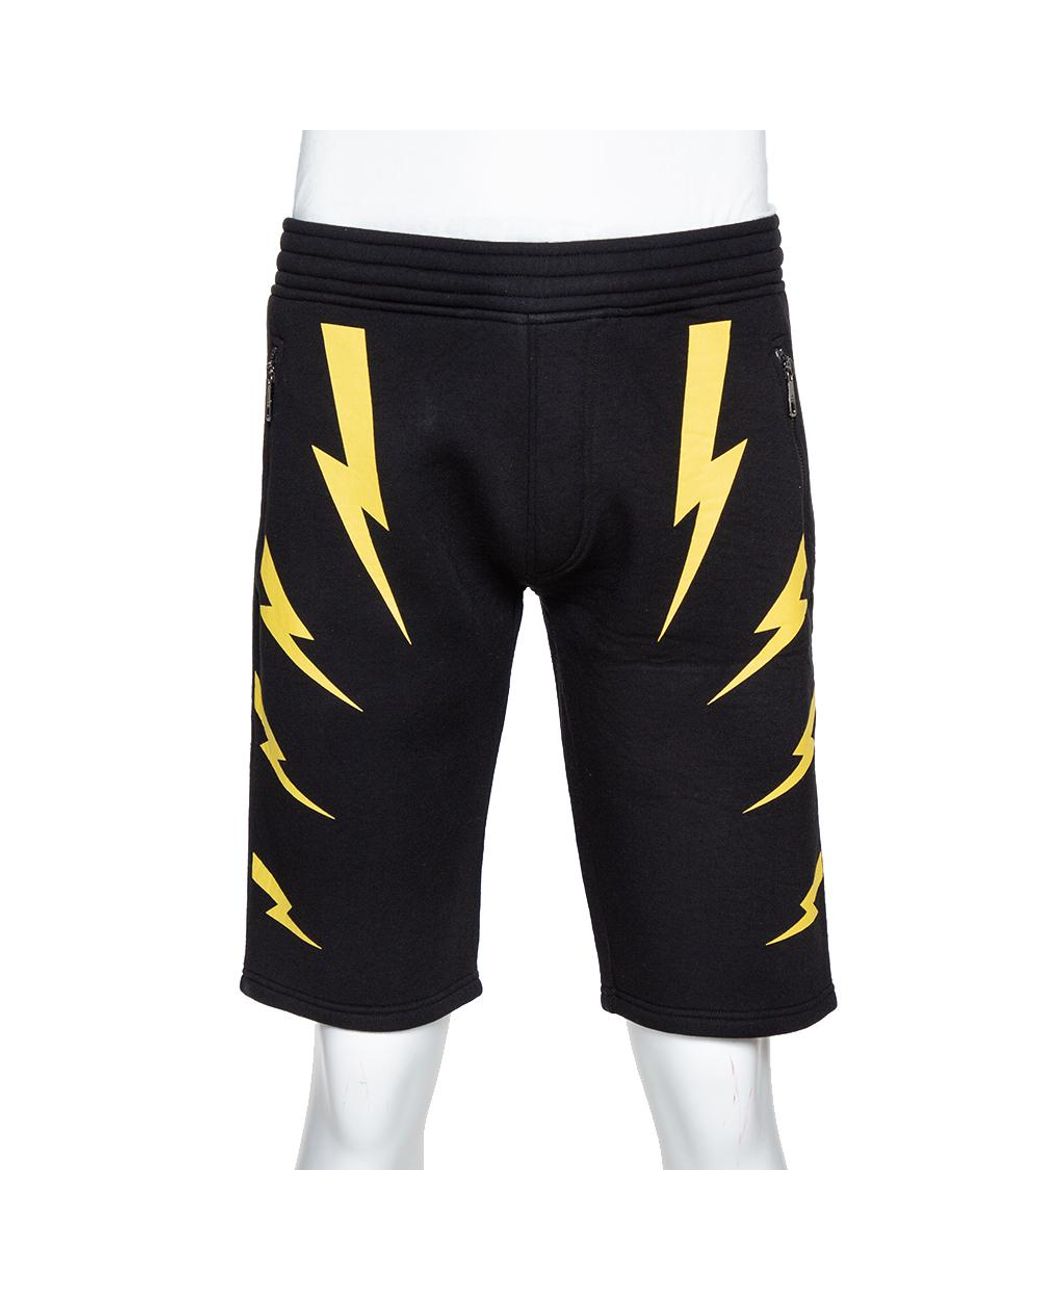 Neil Barrett Black & Yellow Slouch Fit Thunderbolt Shorts for Men - Lyst